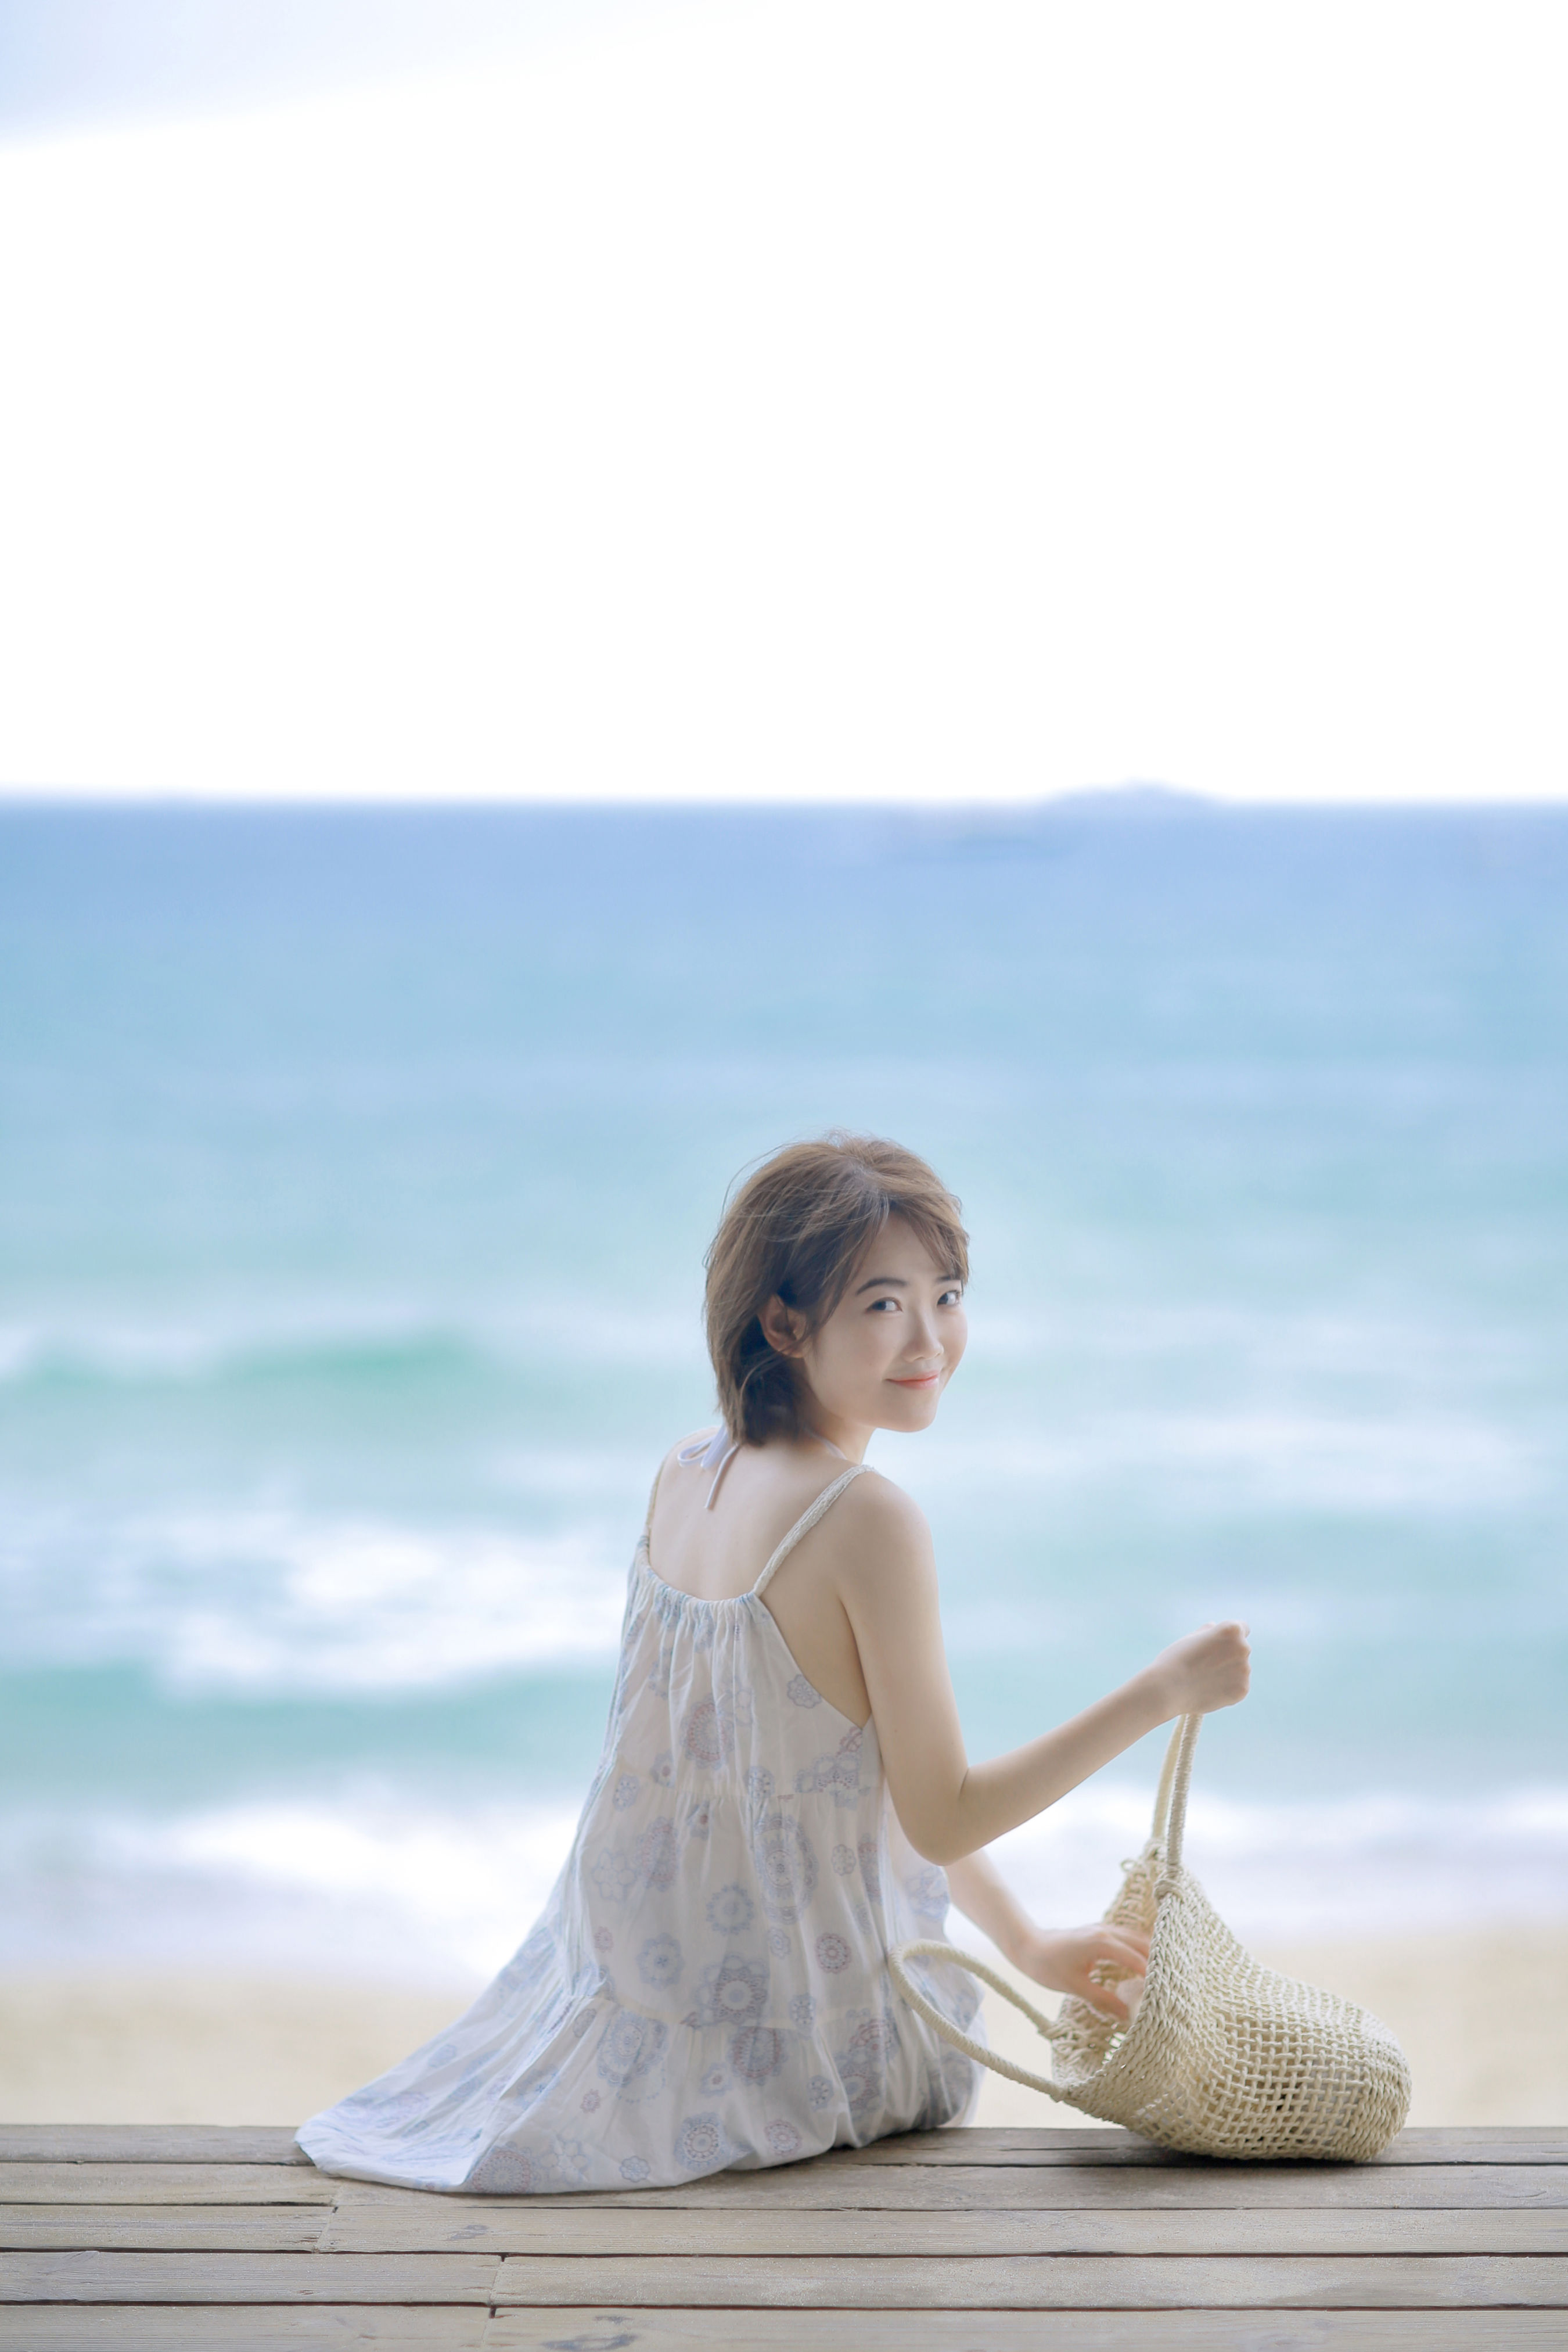 夏日海滩性感美女高清壁纸-壁纸下载-www.pp3.cn